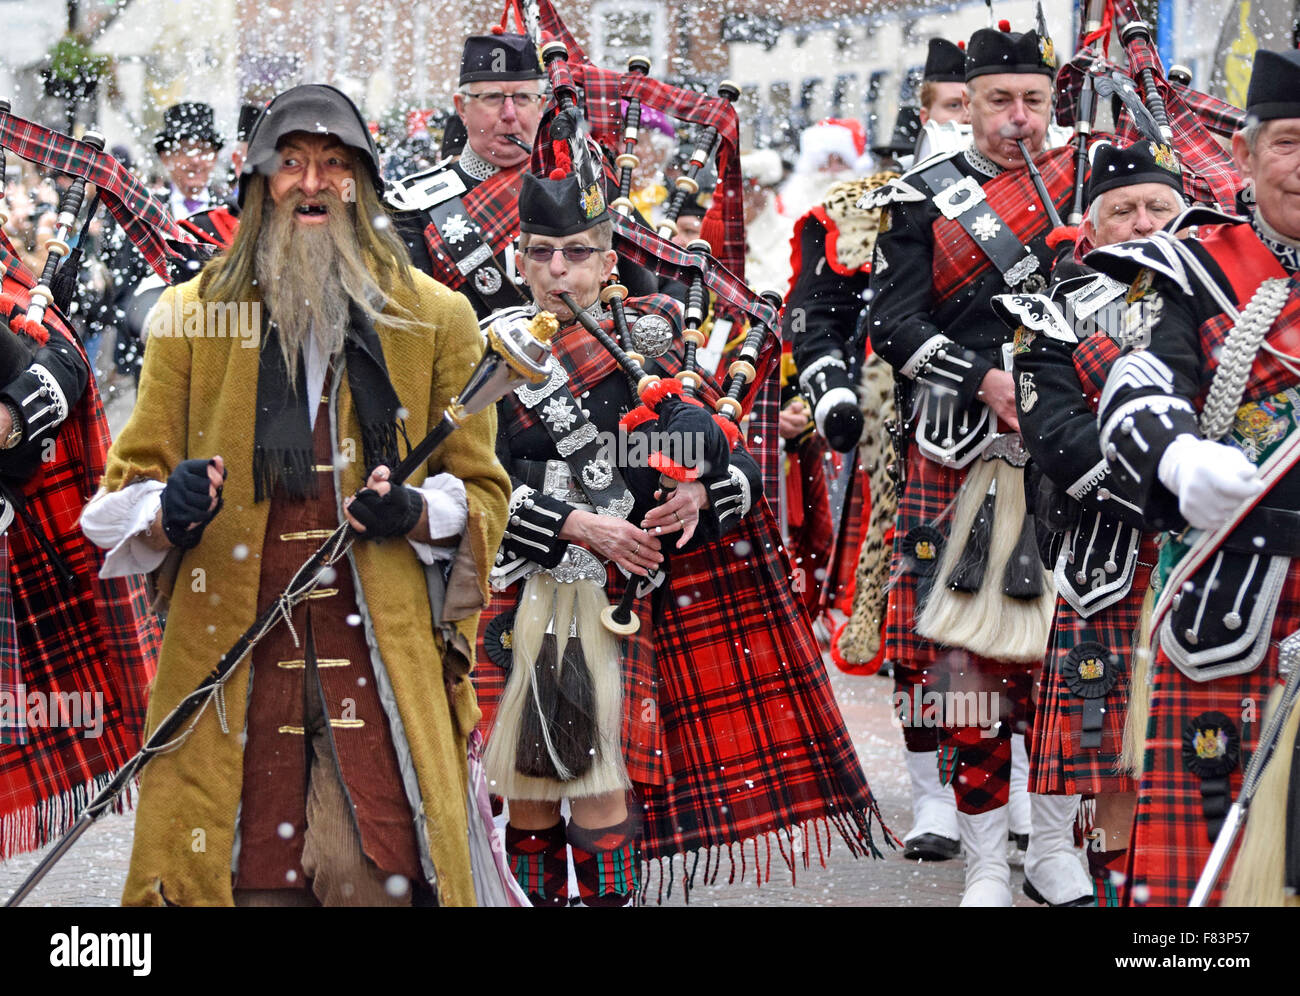 Rochester, Kent, 5. Dezember. Der erste Tag des jährlichen Dickens Christmas Festival am Wochenendes beginnt mit Paraden, High Street, Musik und Unterhaltung für die Tausende von Besuchern - einige künstlich beschneit. Fagin führt die Band Credit: PjrNews/Alamy Live News Stockfoto